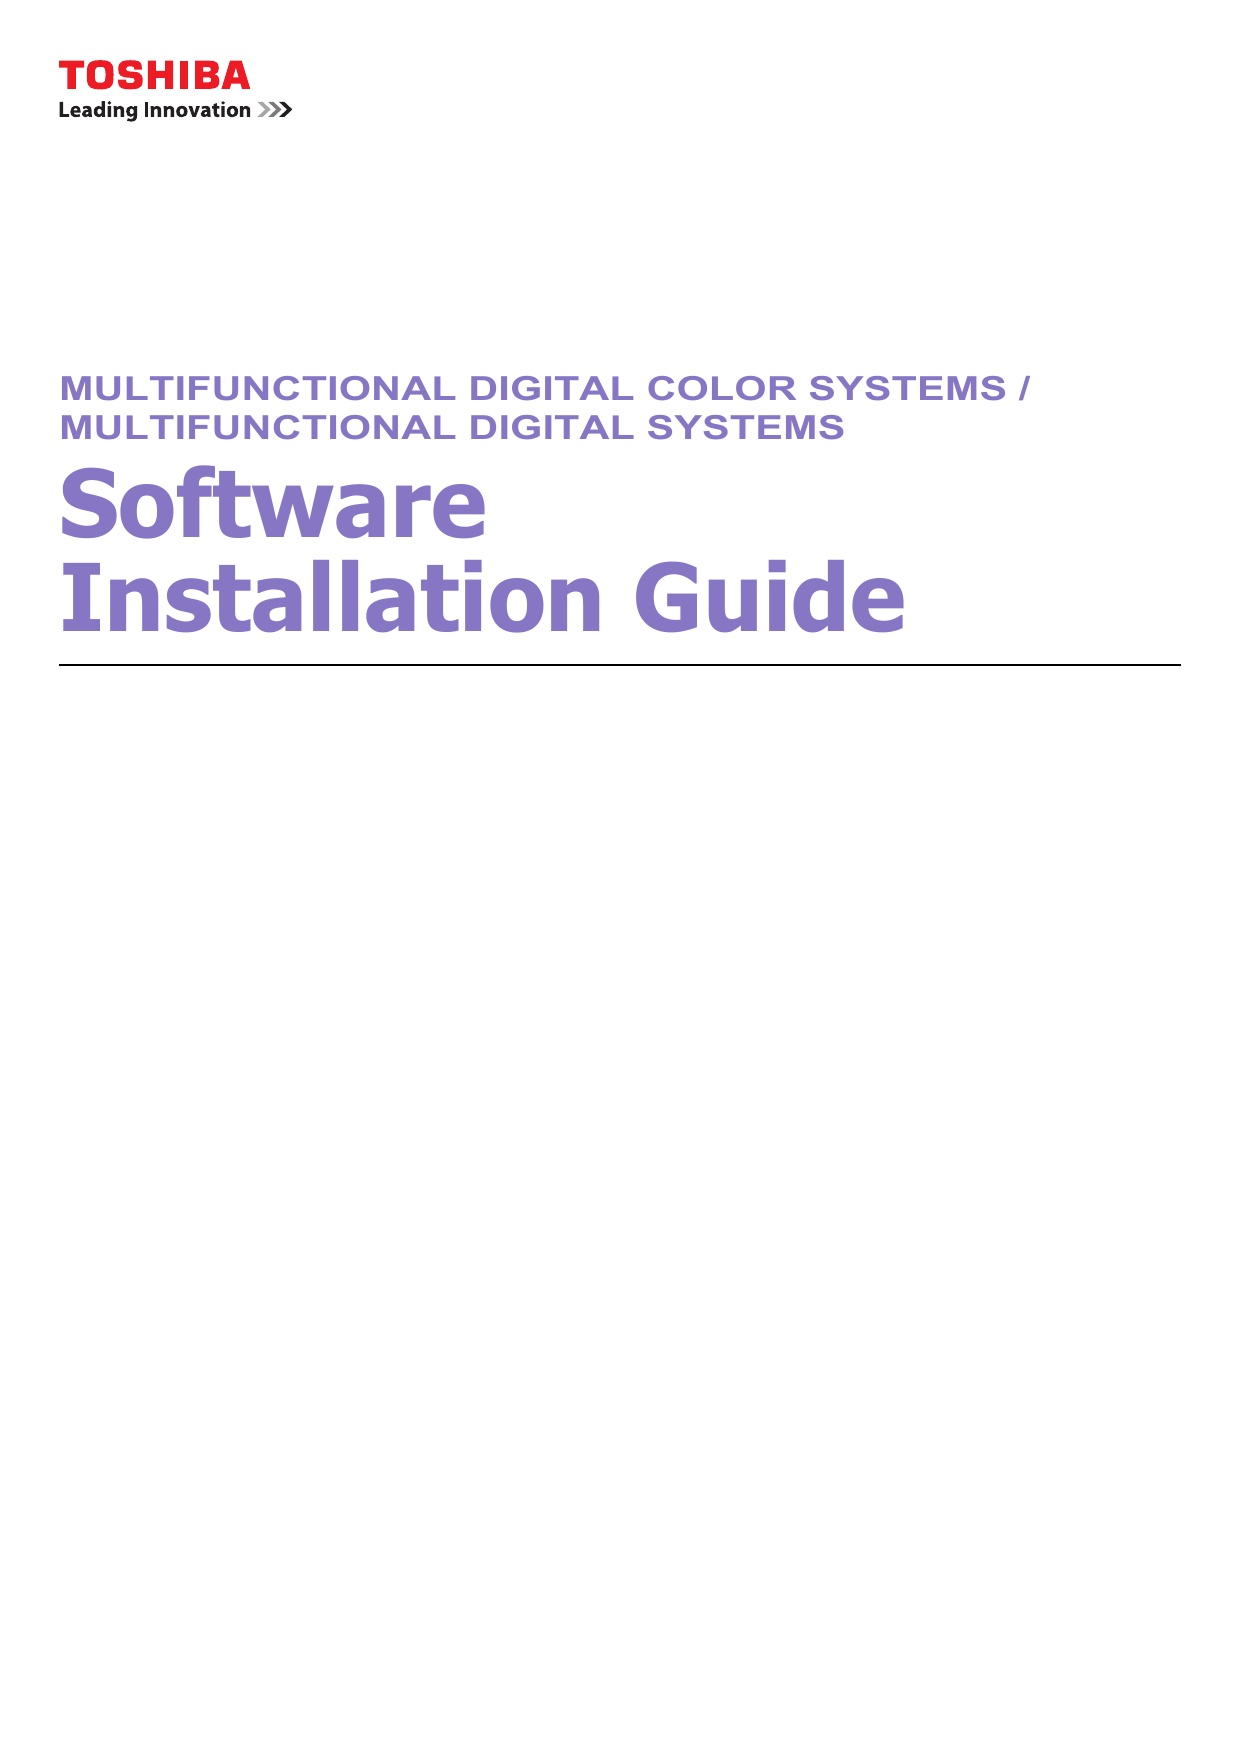 toshiba e-studio 656 software installation guide